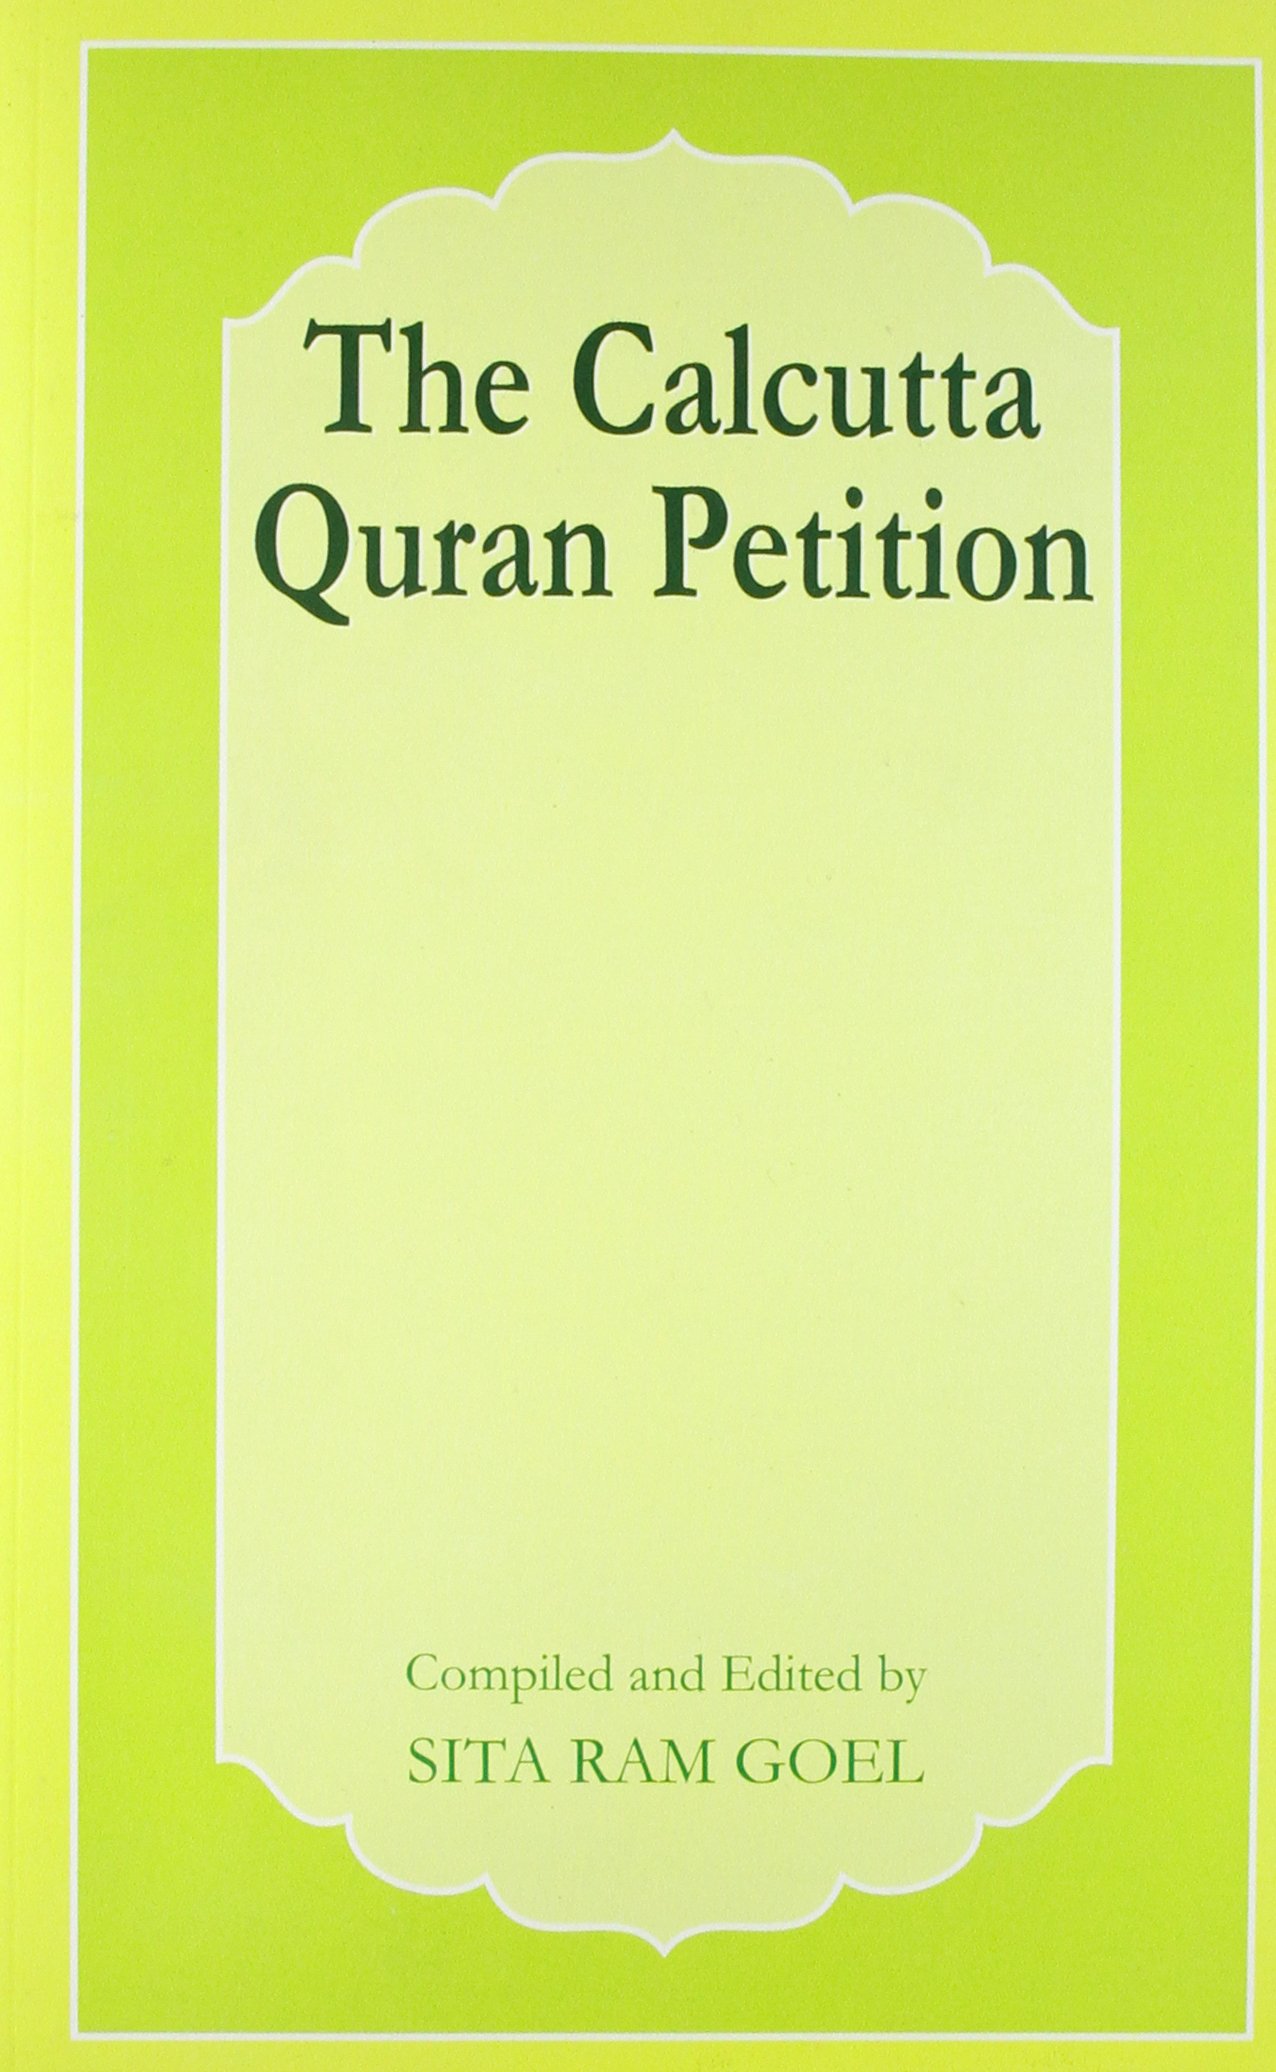 The Calcutta Quran Petition